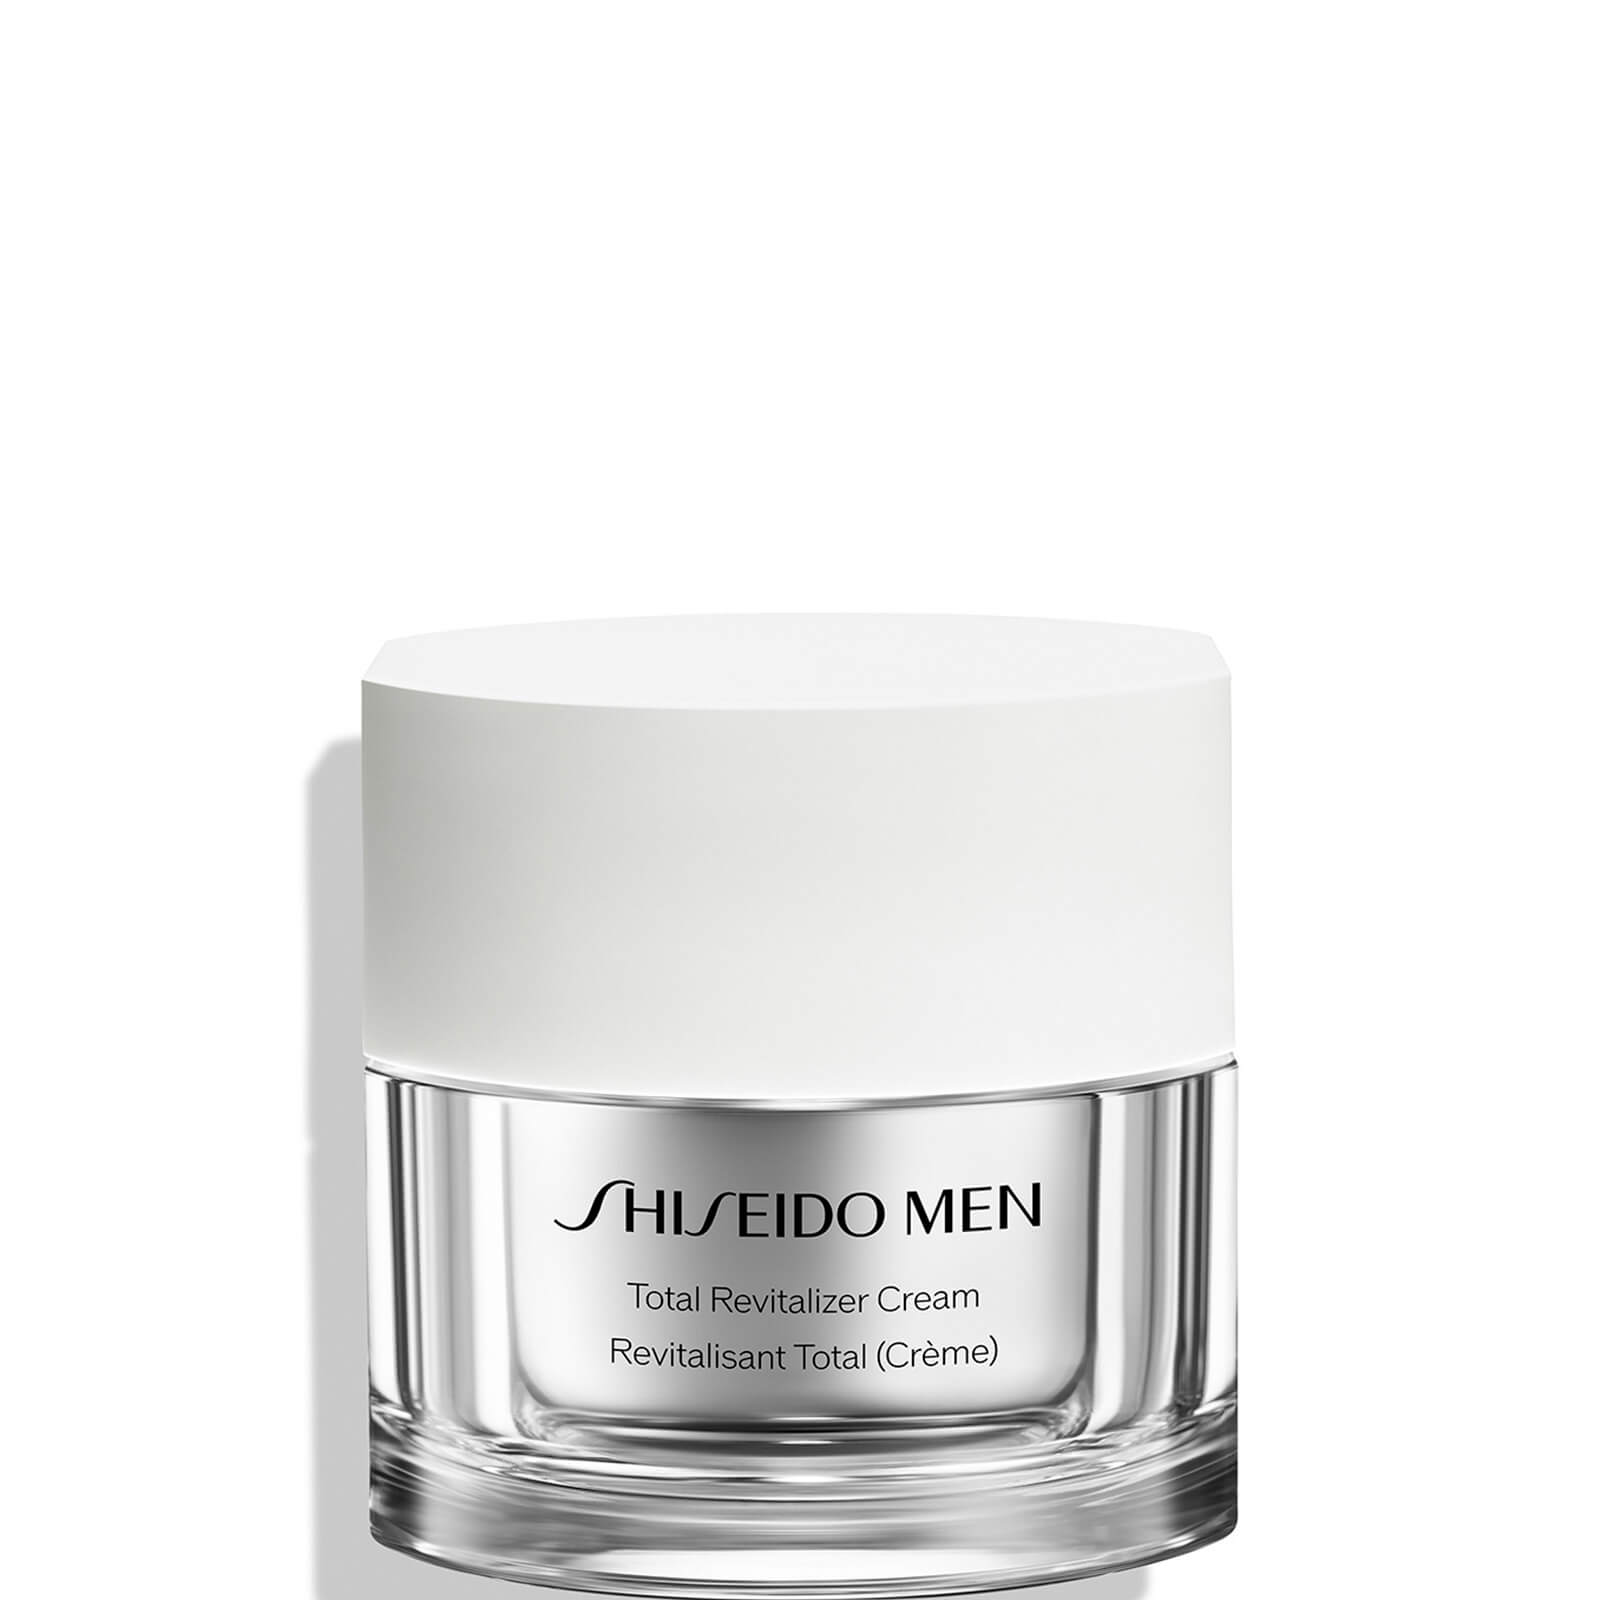 Zdjęcia - Kremy i toniki Shiseido Men's Total Revitalizer Cream 50ml 10118408301 